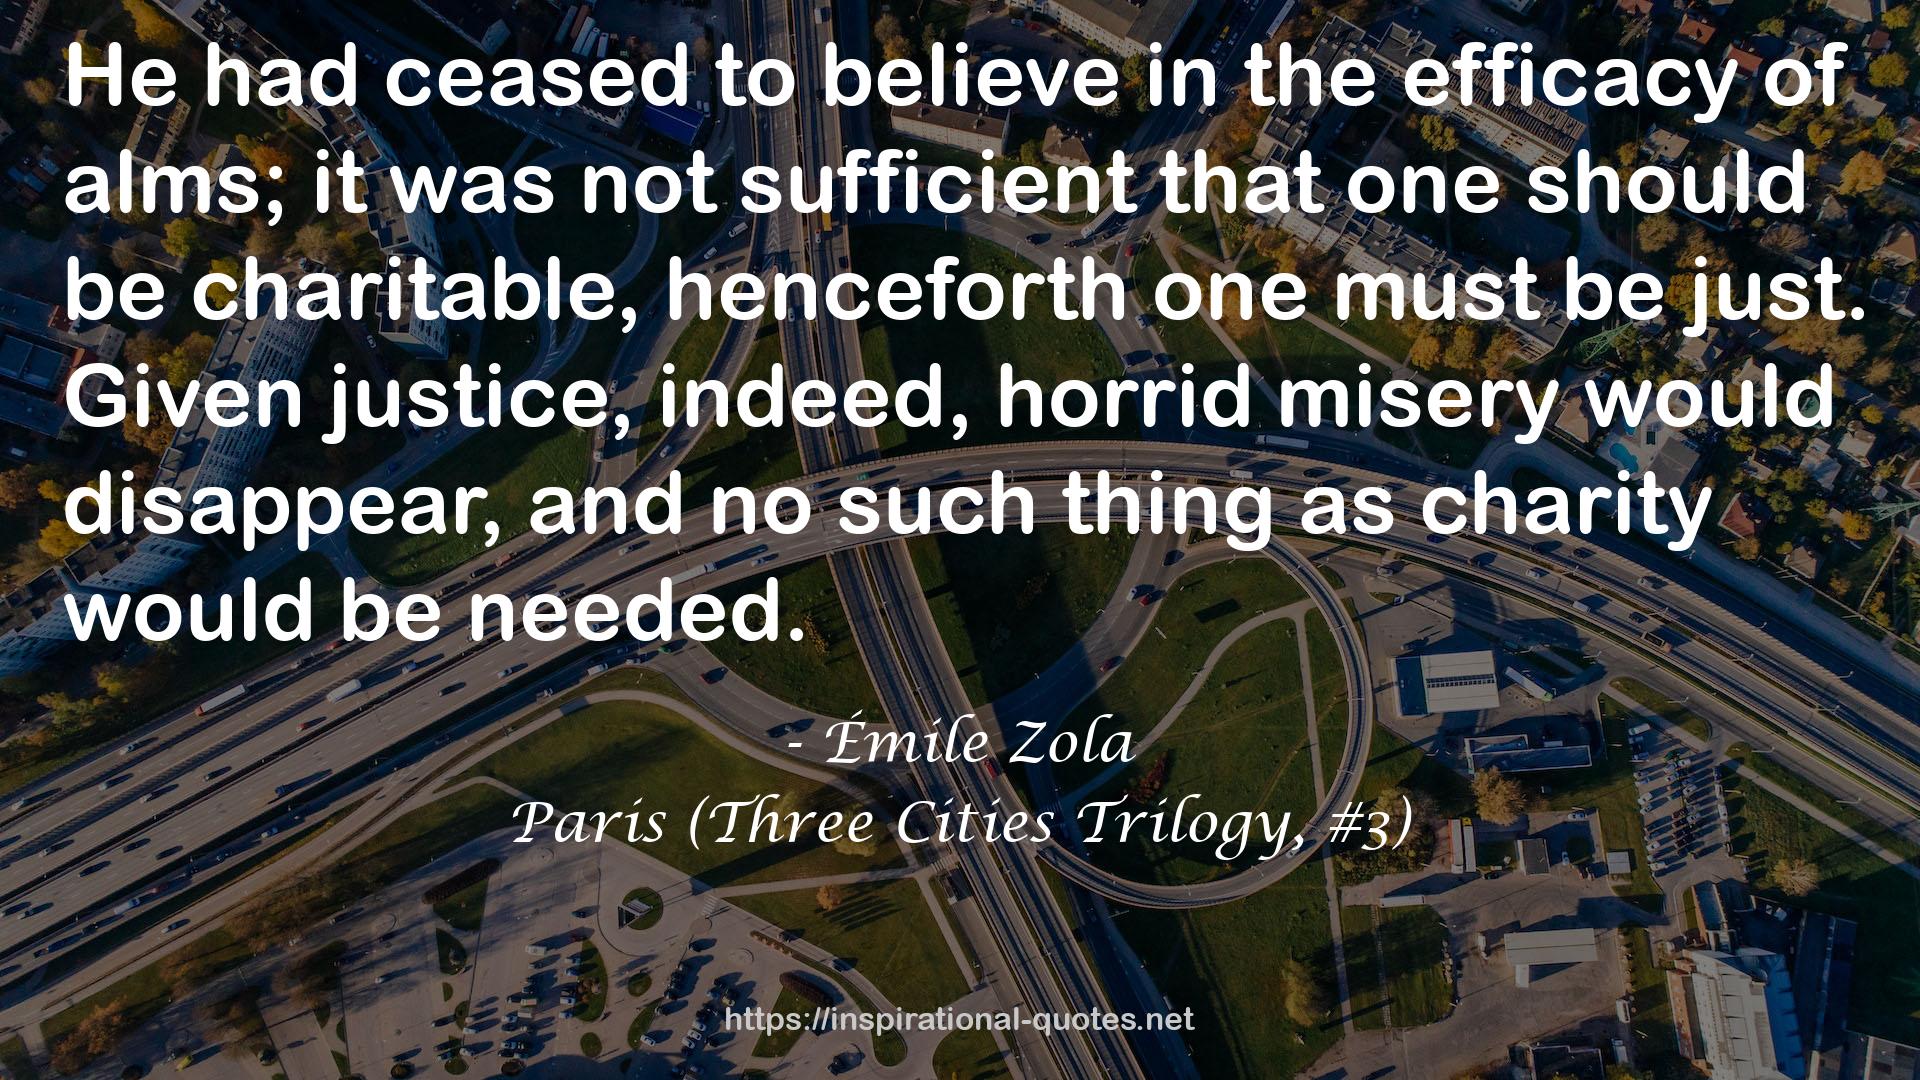 Paris (Three Cities Trilogy, #3) QUOTES